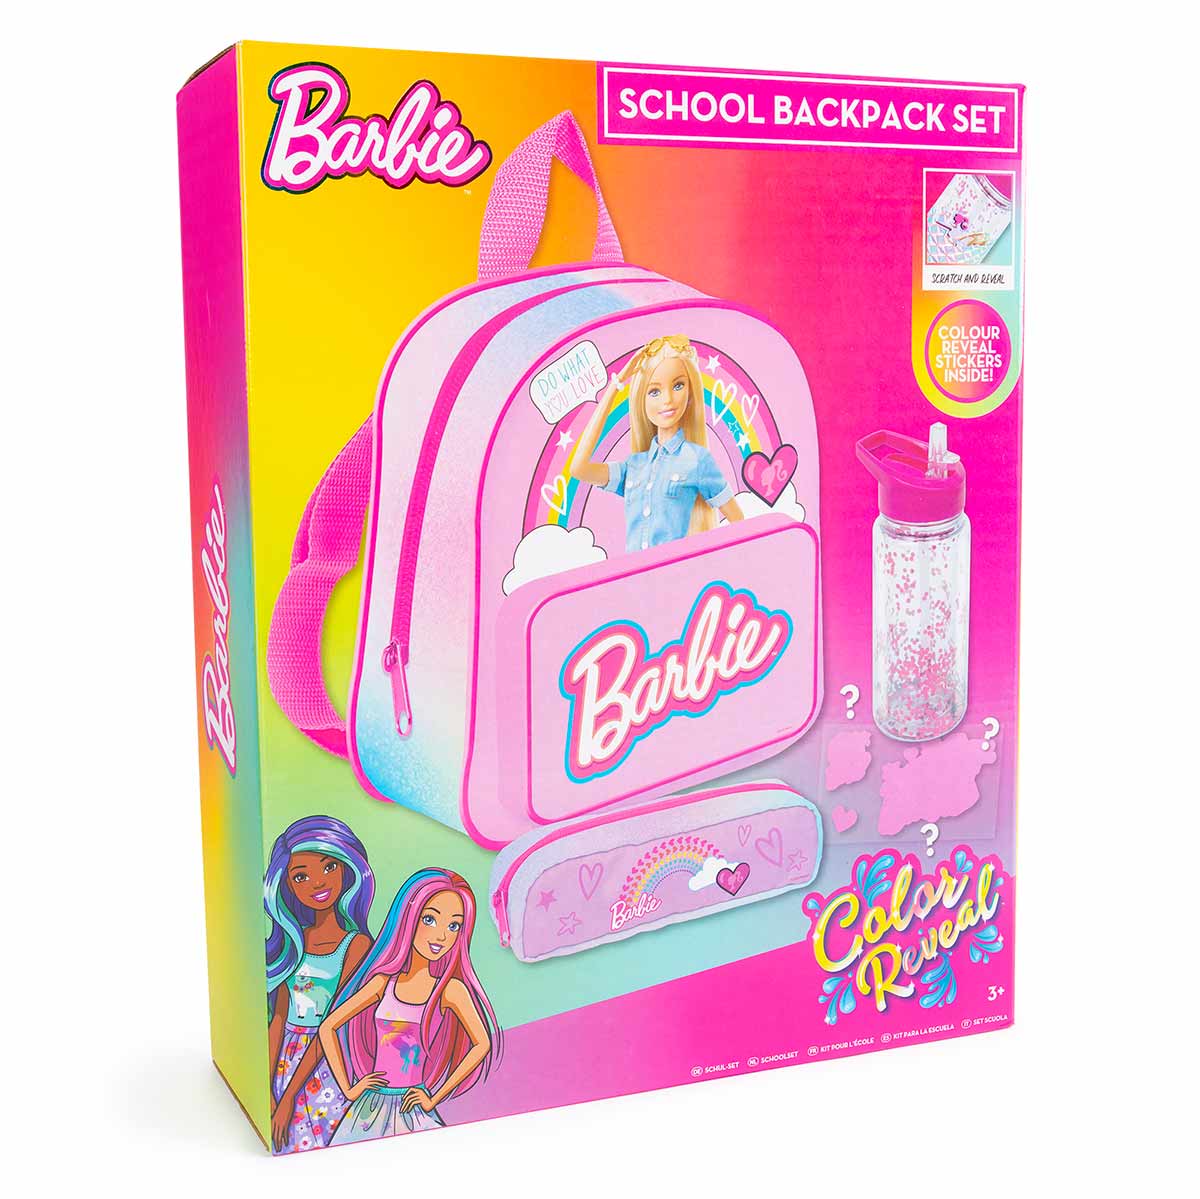 Barbie Girls 4 Piece Backpack Set | Kids Multicolor Rucksack Bundle with  School Bag, Pencil Case, Lunch Bag & Water Bottle